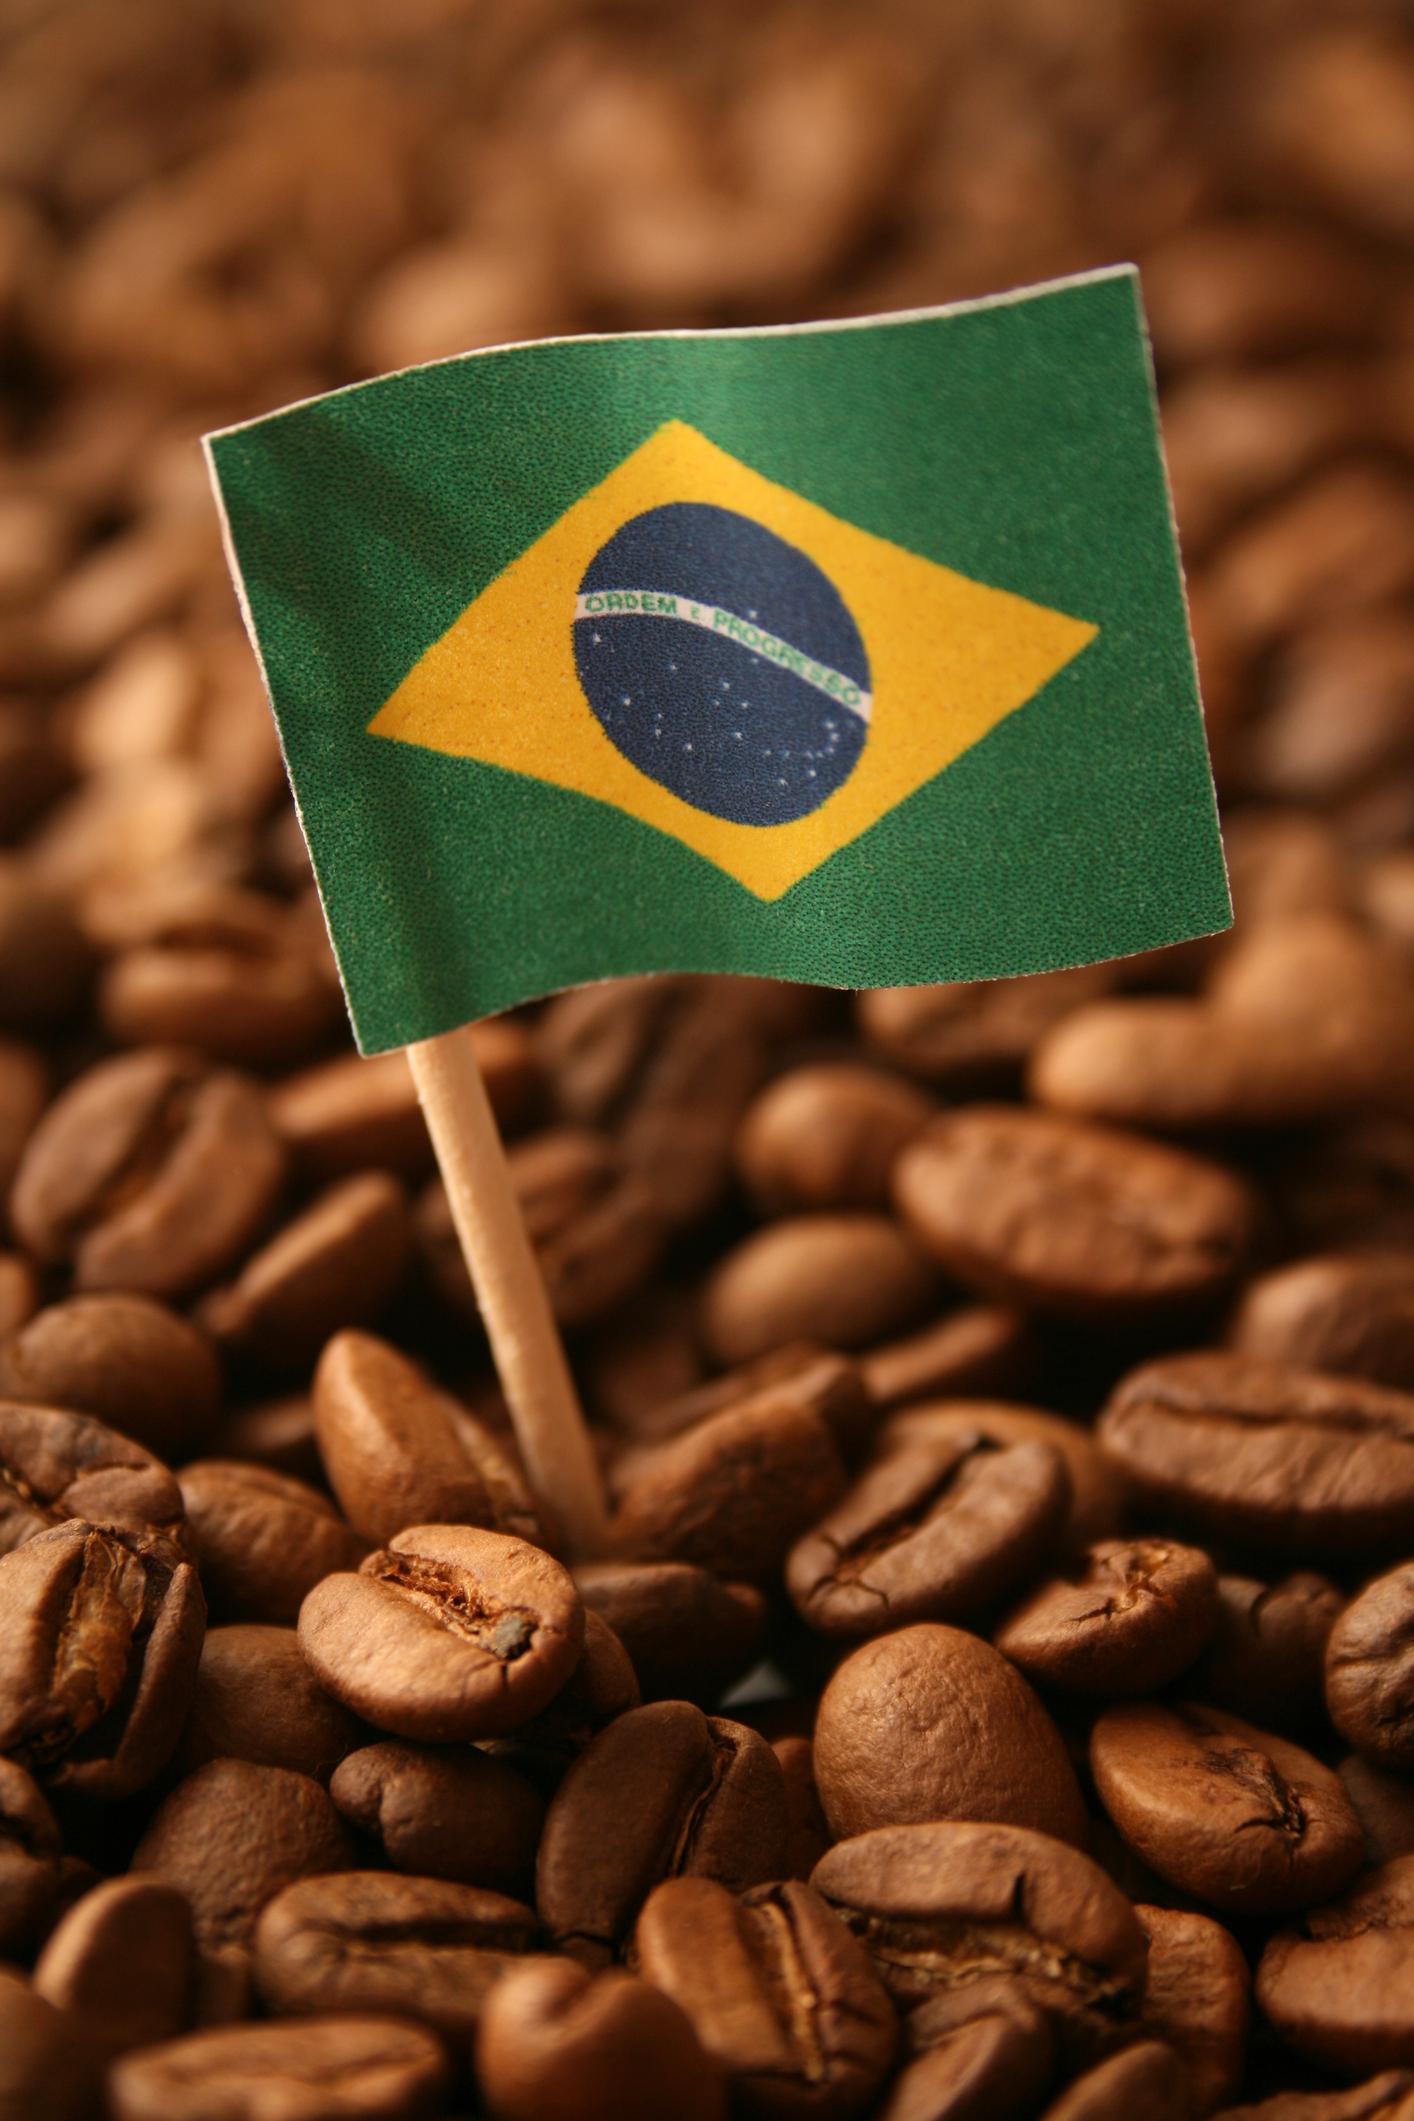 Una bandera de Brasil esta clavada sobre unos granos de café.